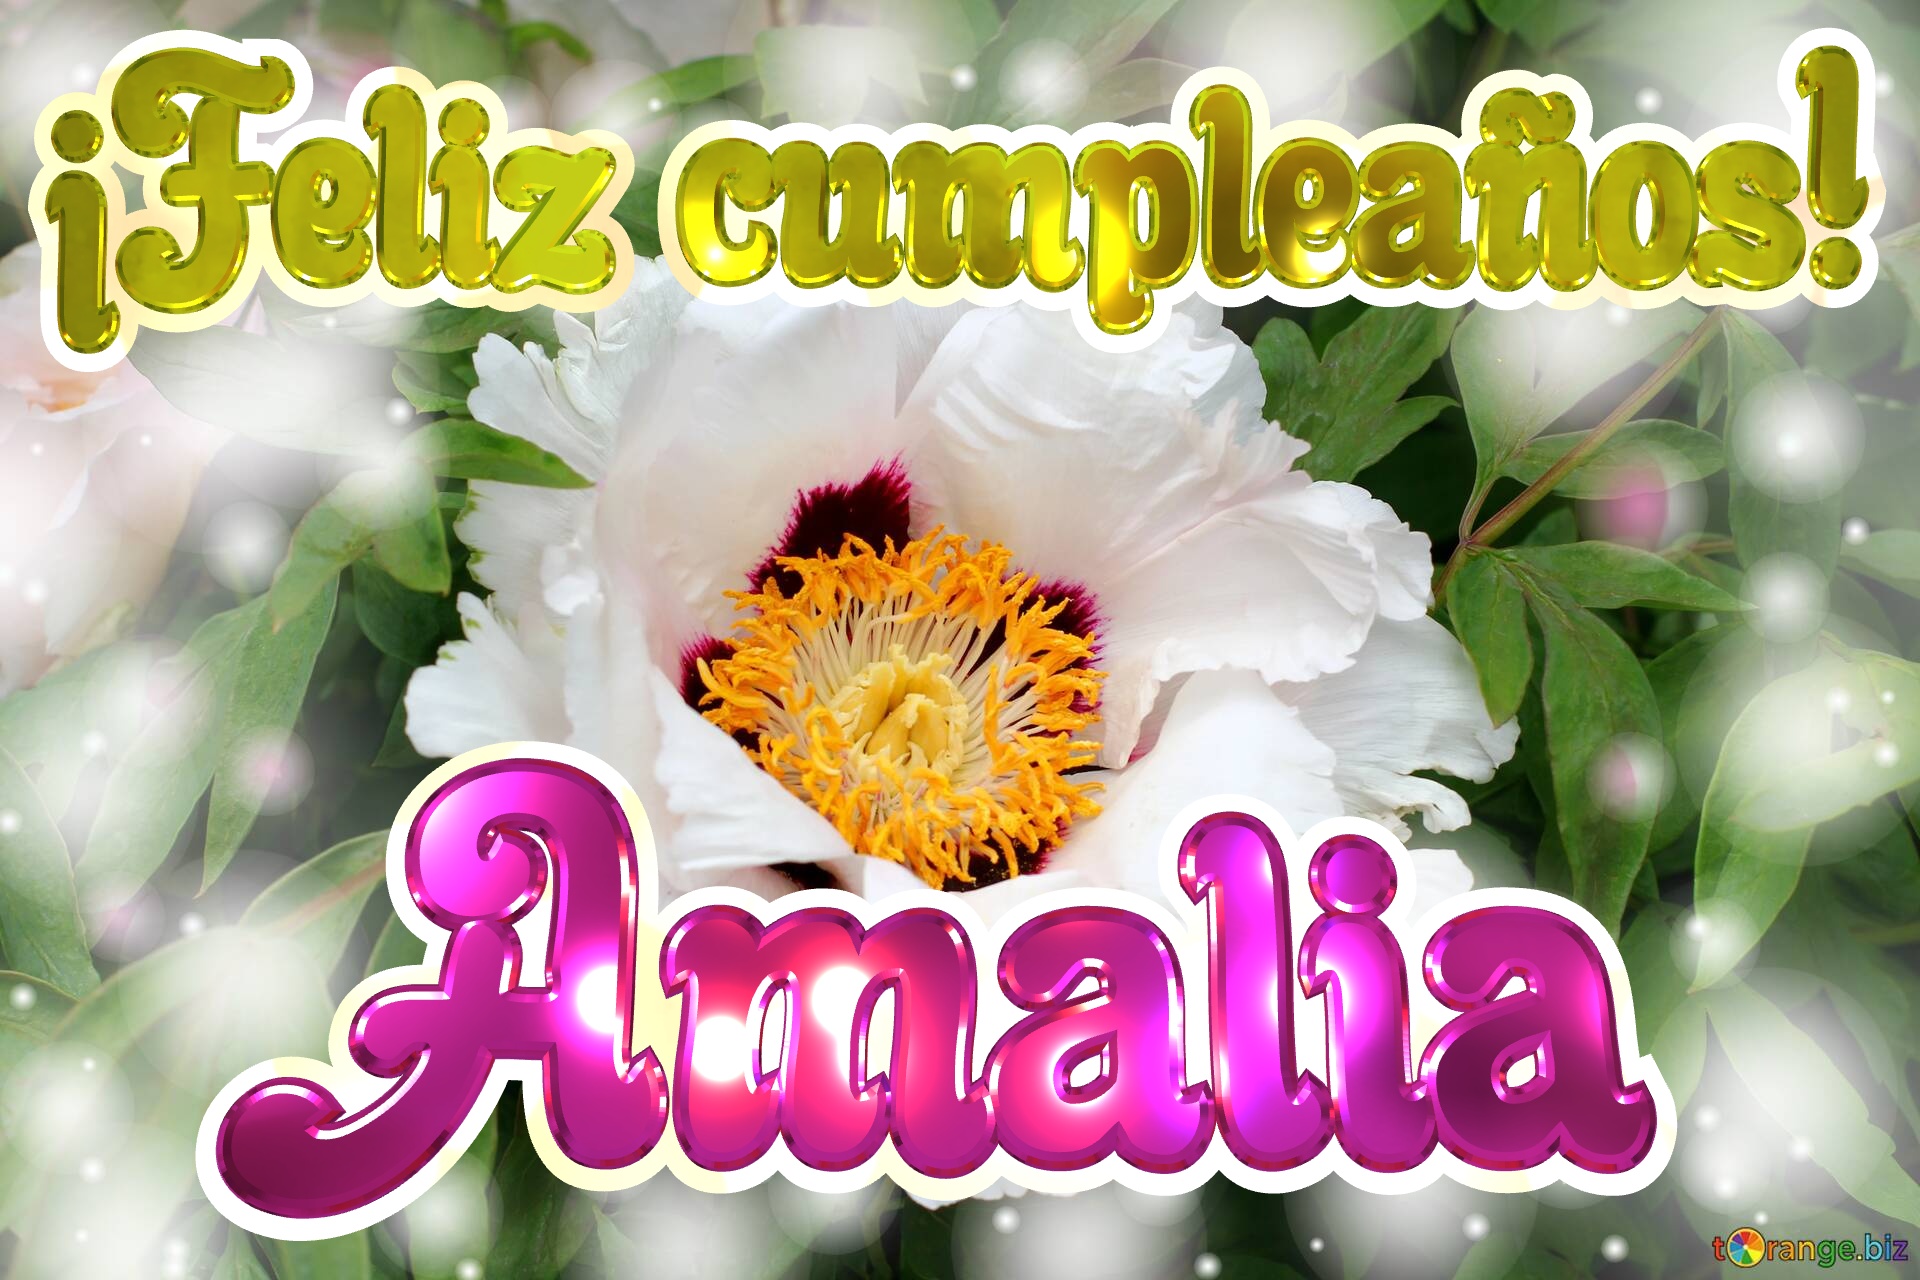 ¡Feliz cumpleaños! Amalia  El renacer de la vida: flores que celebran la resurrección №0